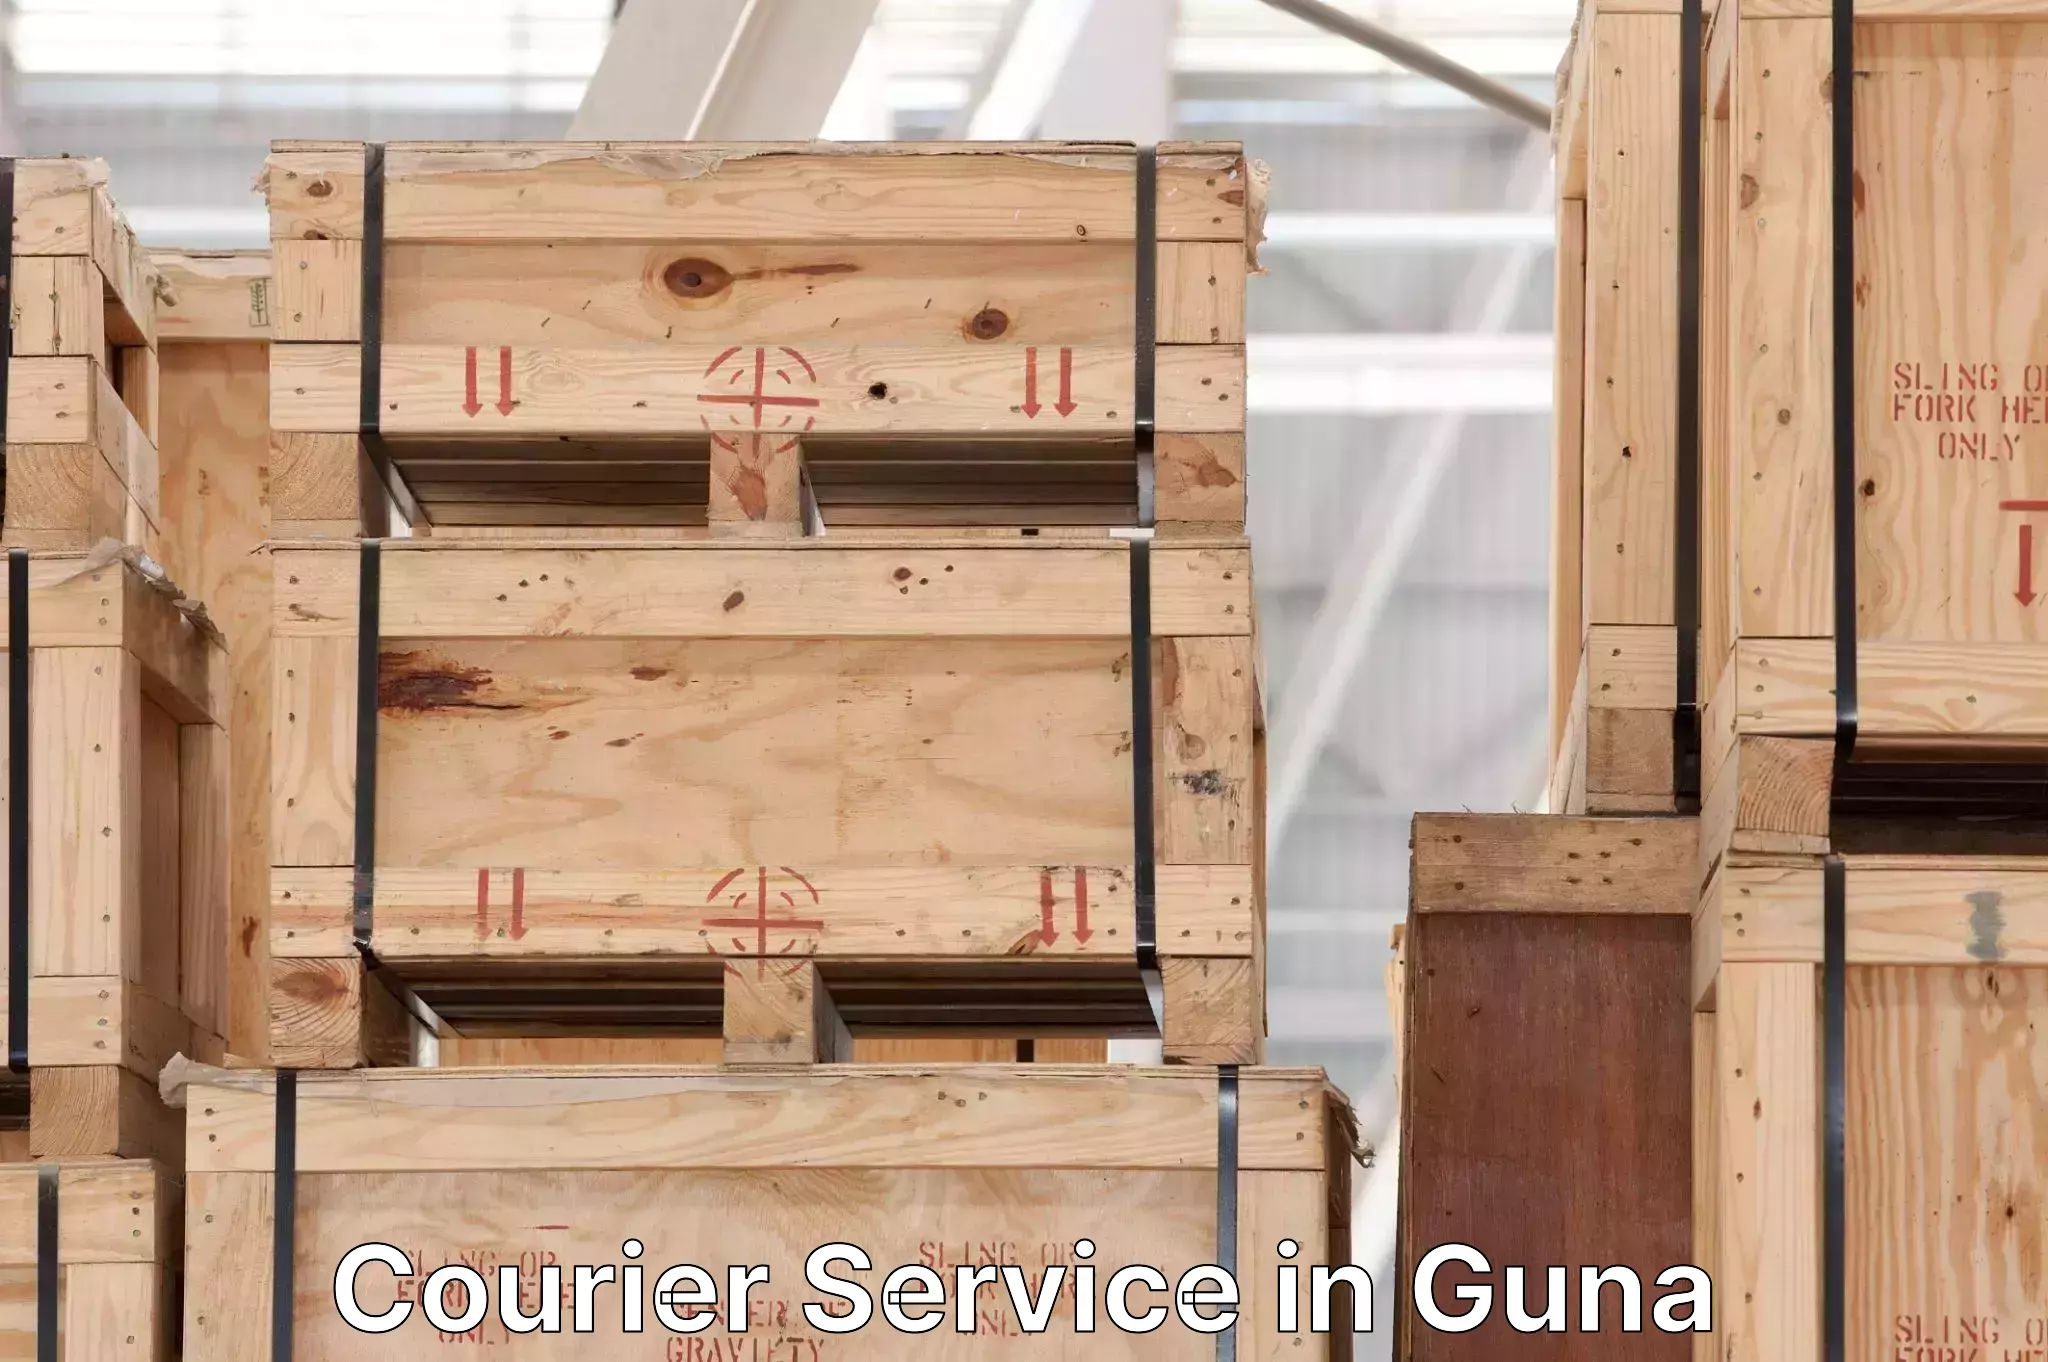 Nationwide shipping capabilities in Guna